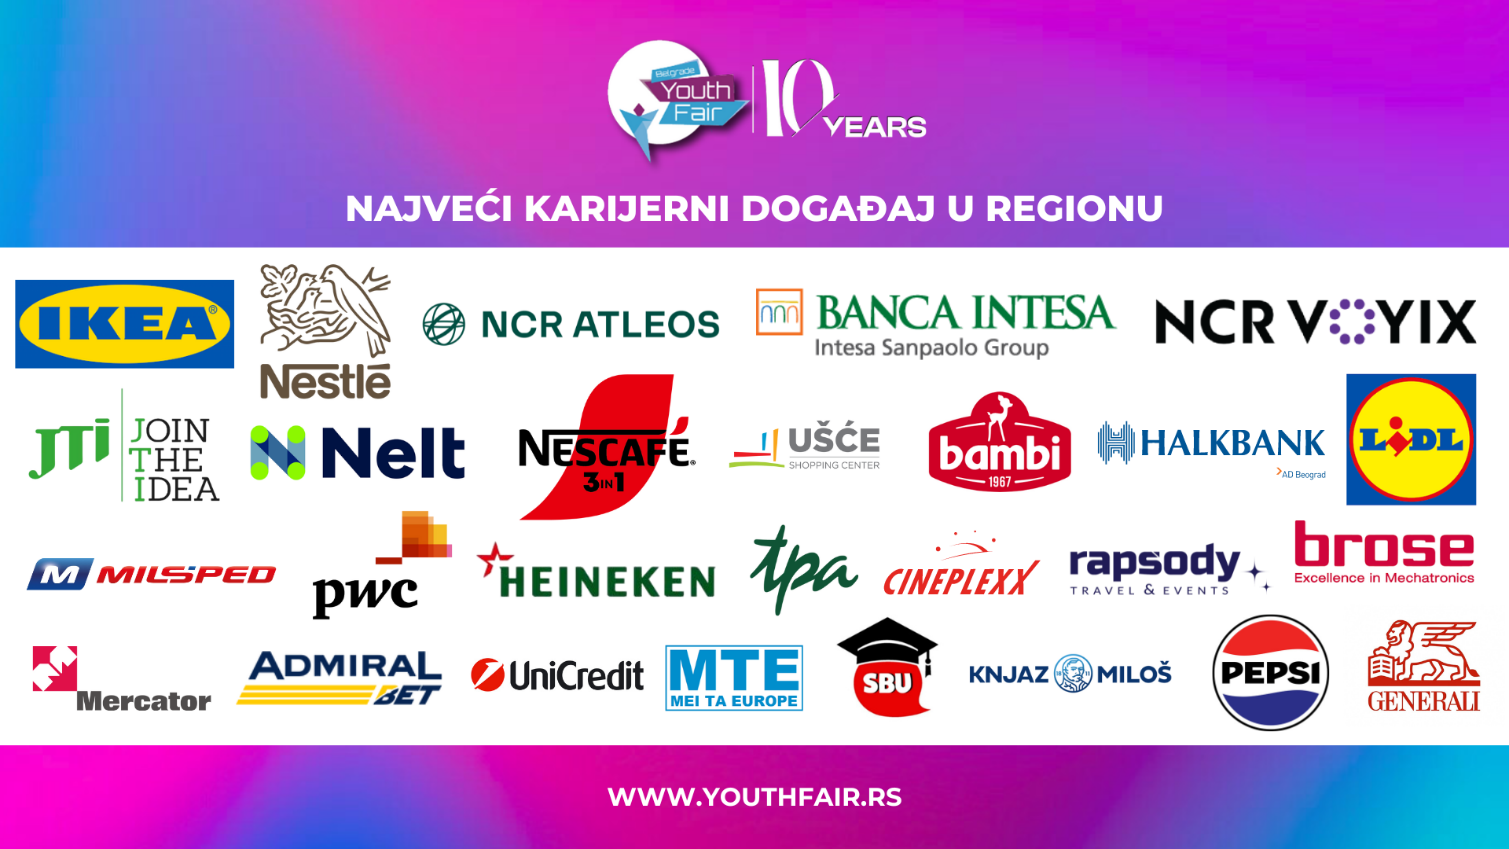 Održan jubilarni 10. Belgrade Youth Fair – najveći karijerni događaj u regionu i to sa rekordnom posećenošću